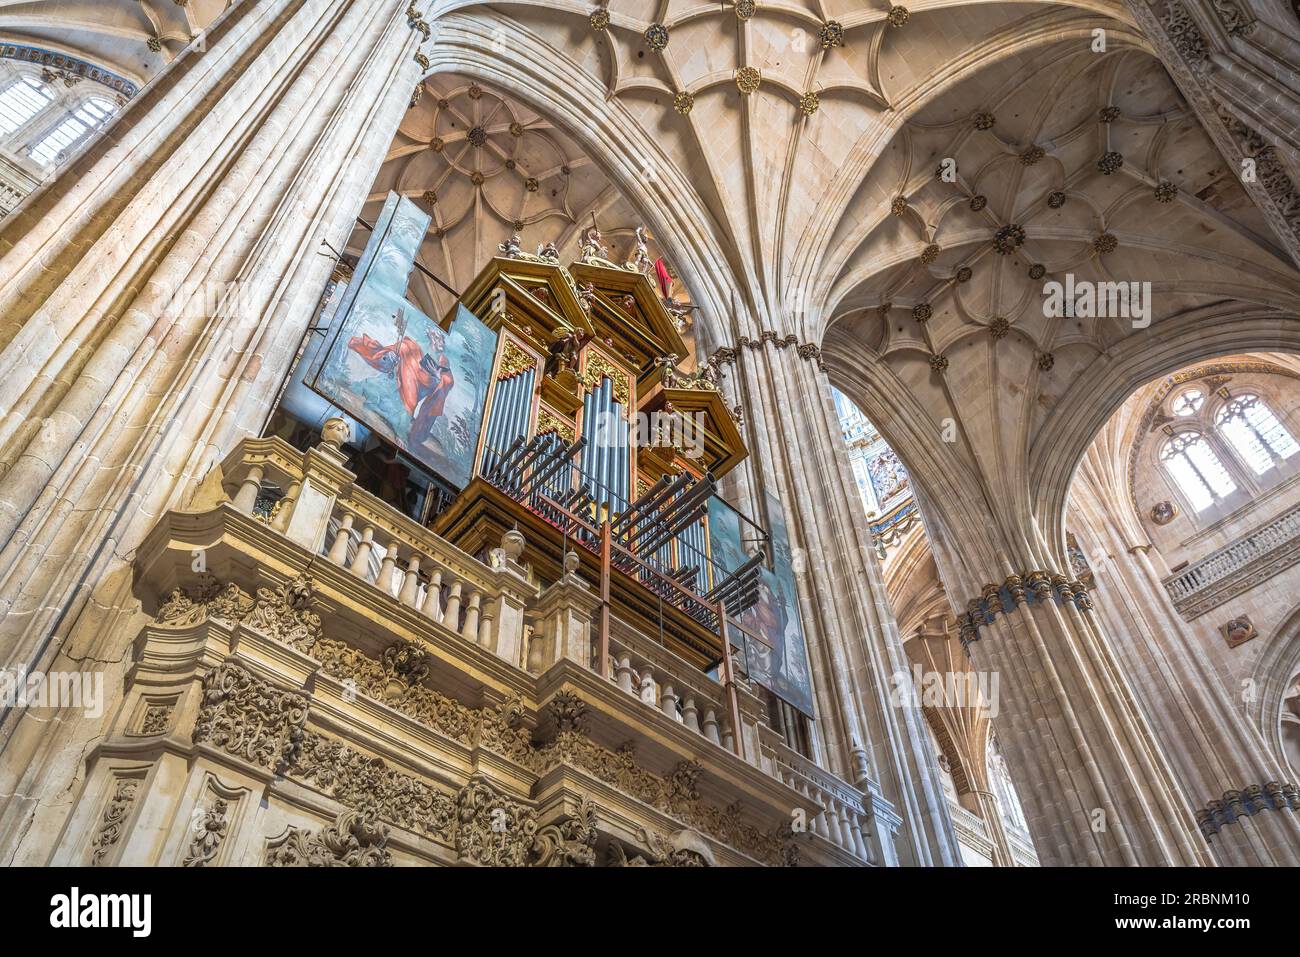 Barockorgel in der neuen Kathedrale von Salamanca - Salamanca, Spanien Stockfoto